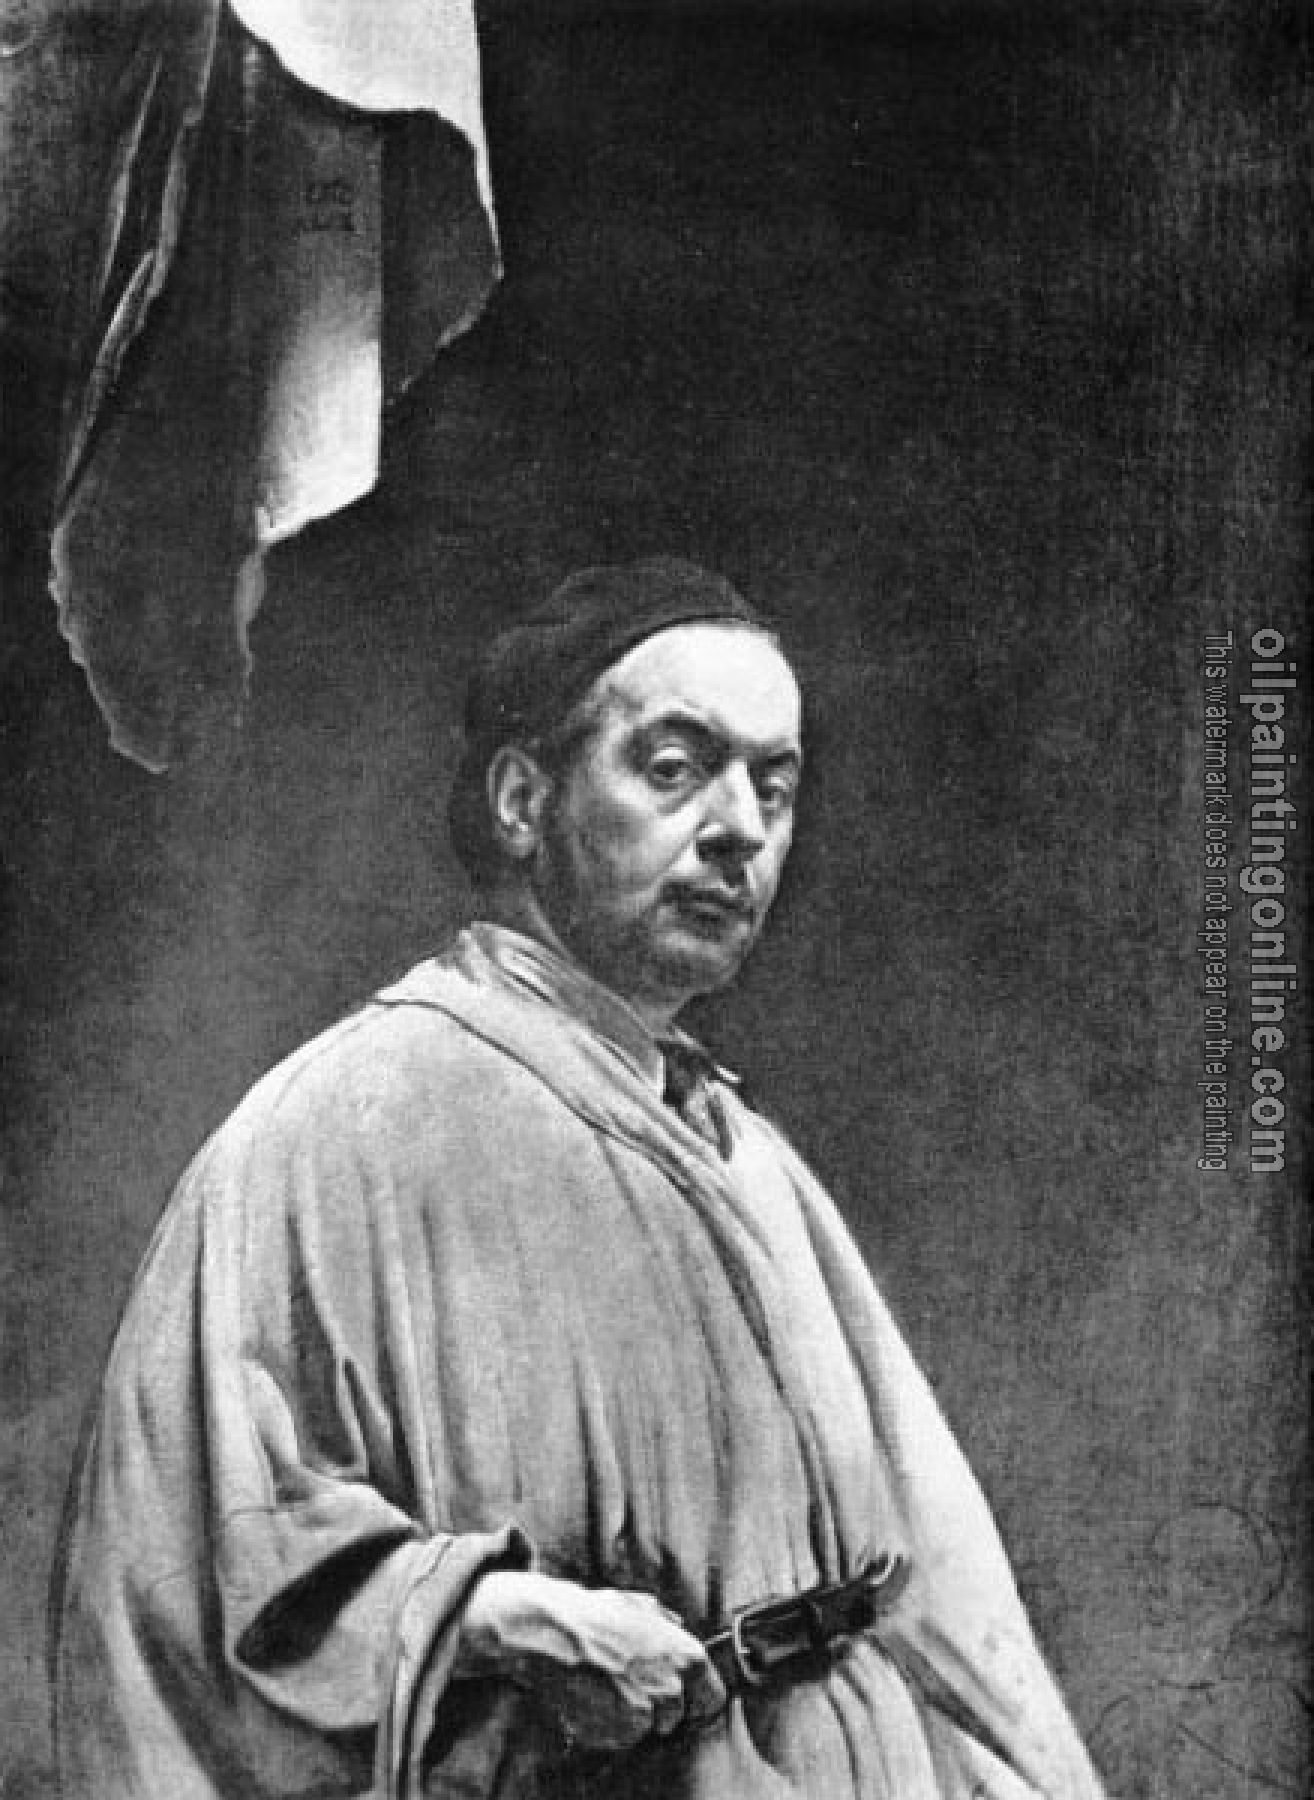 Pietro Annigoni - Autoritratto con tenda sopra la testa